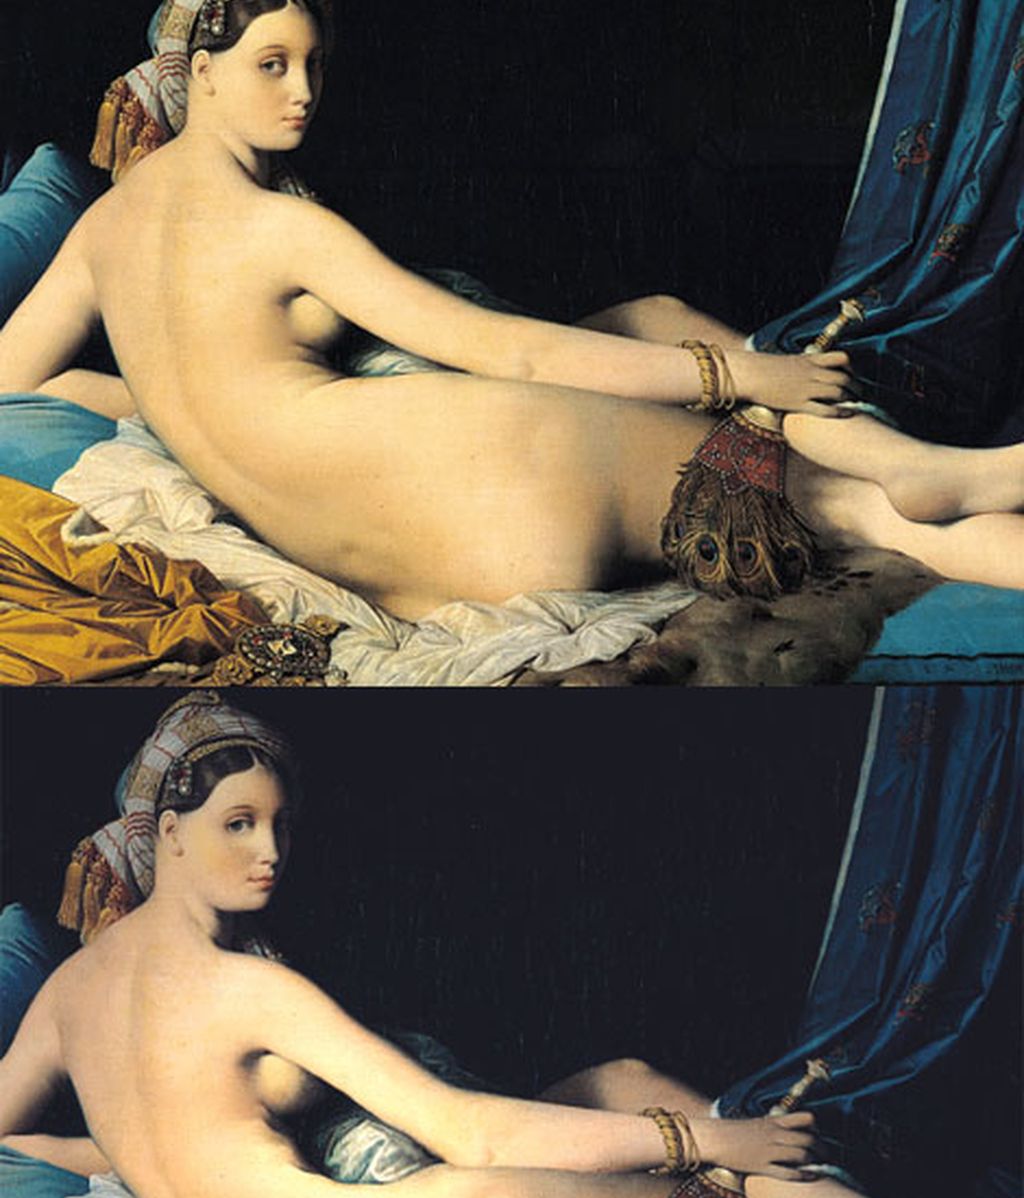 El photoshop llega a las musas desnudas de grandes pintores clásicos